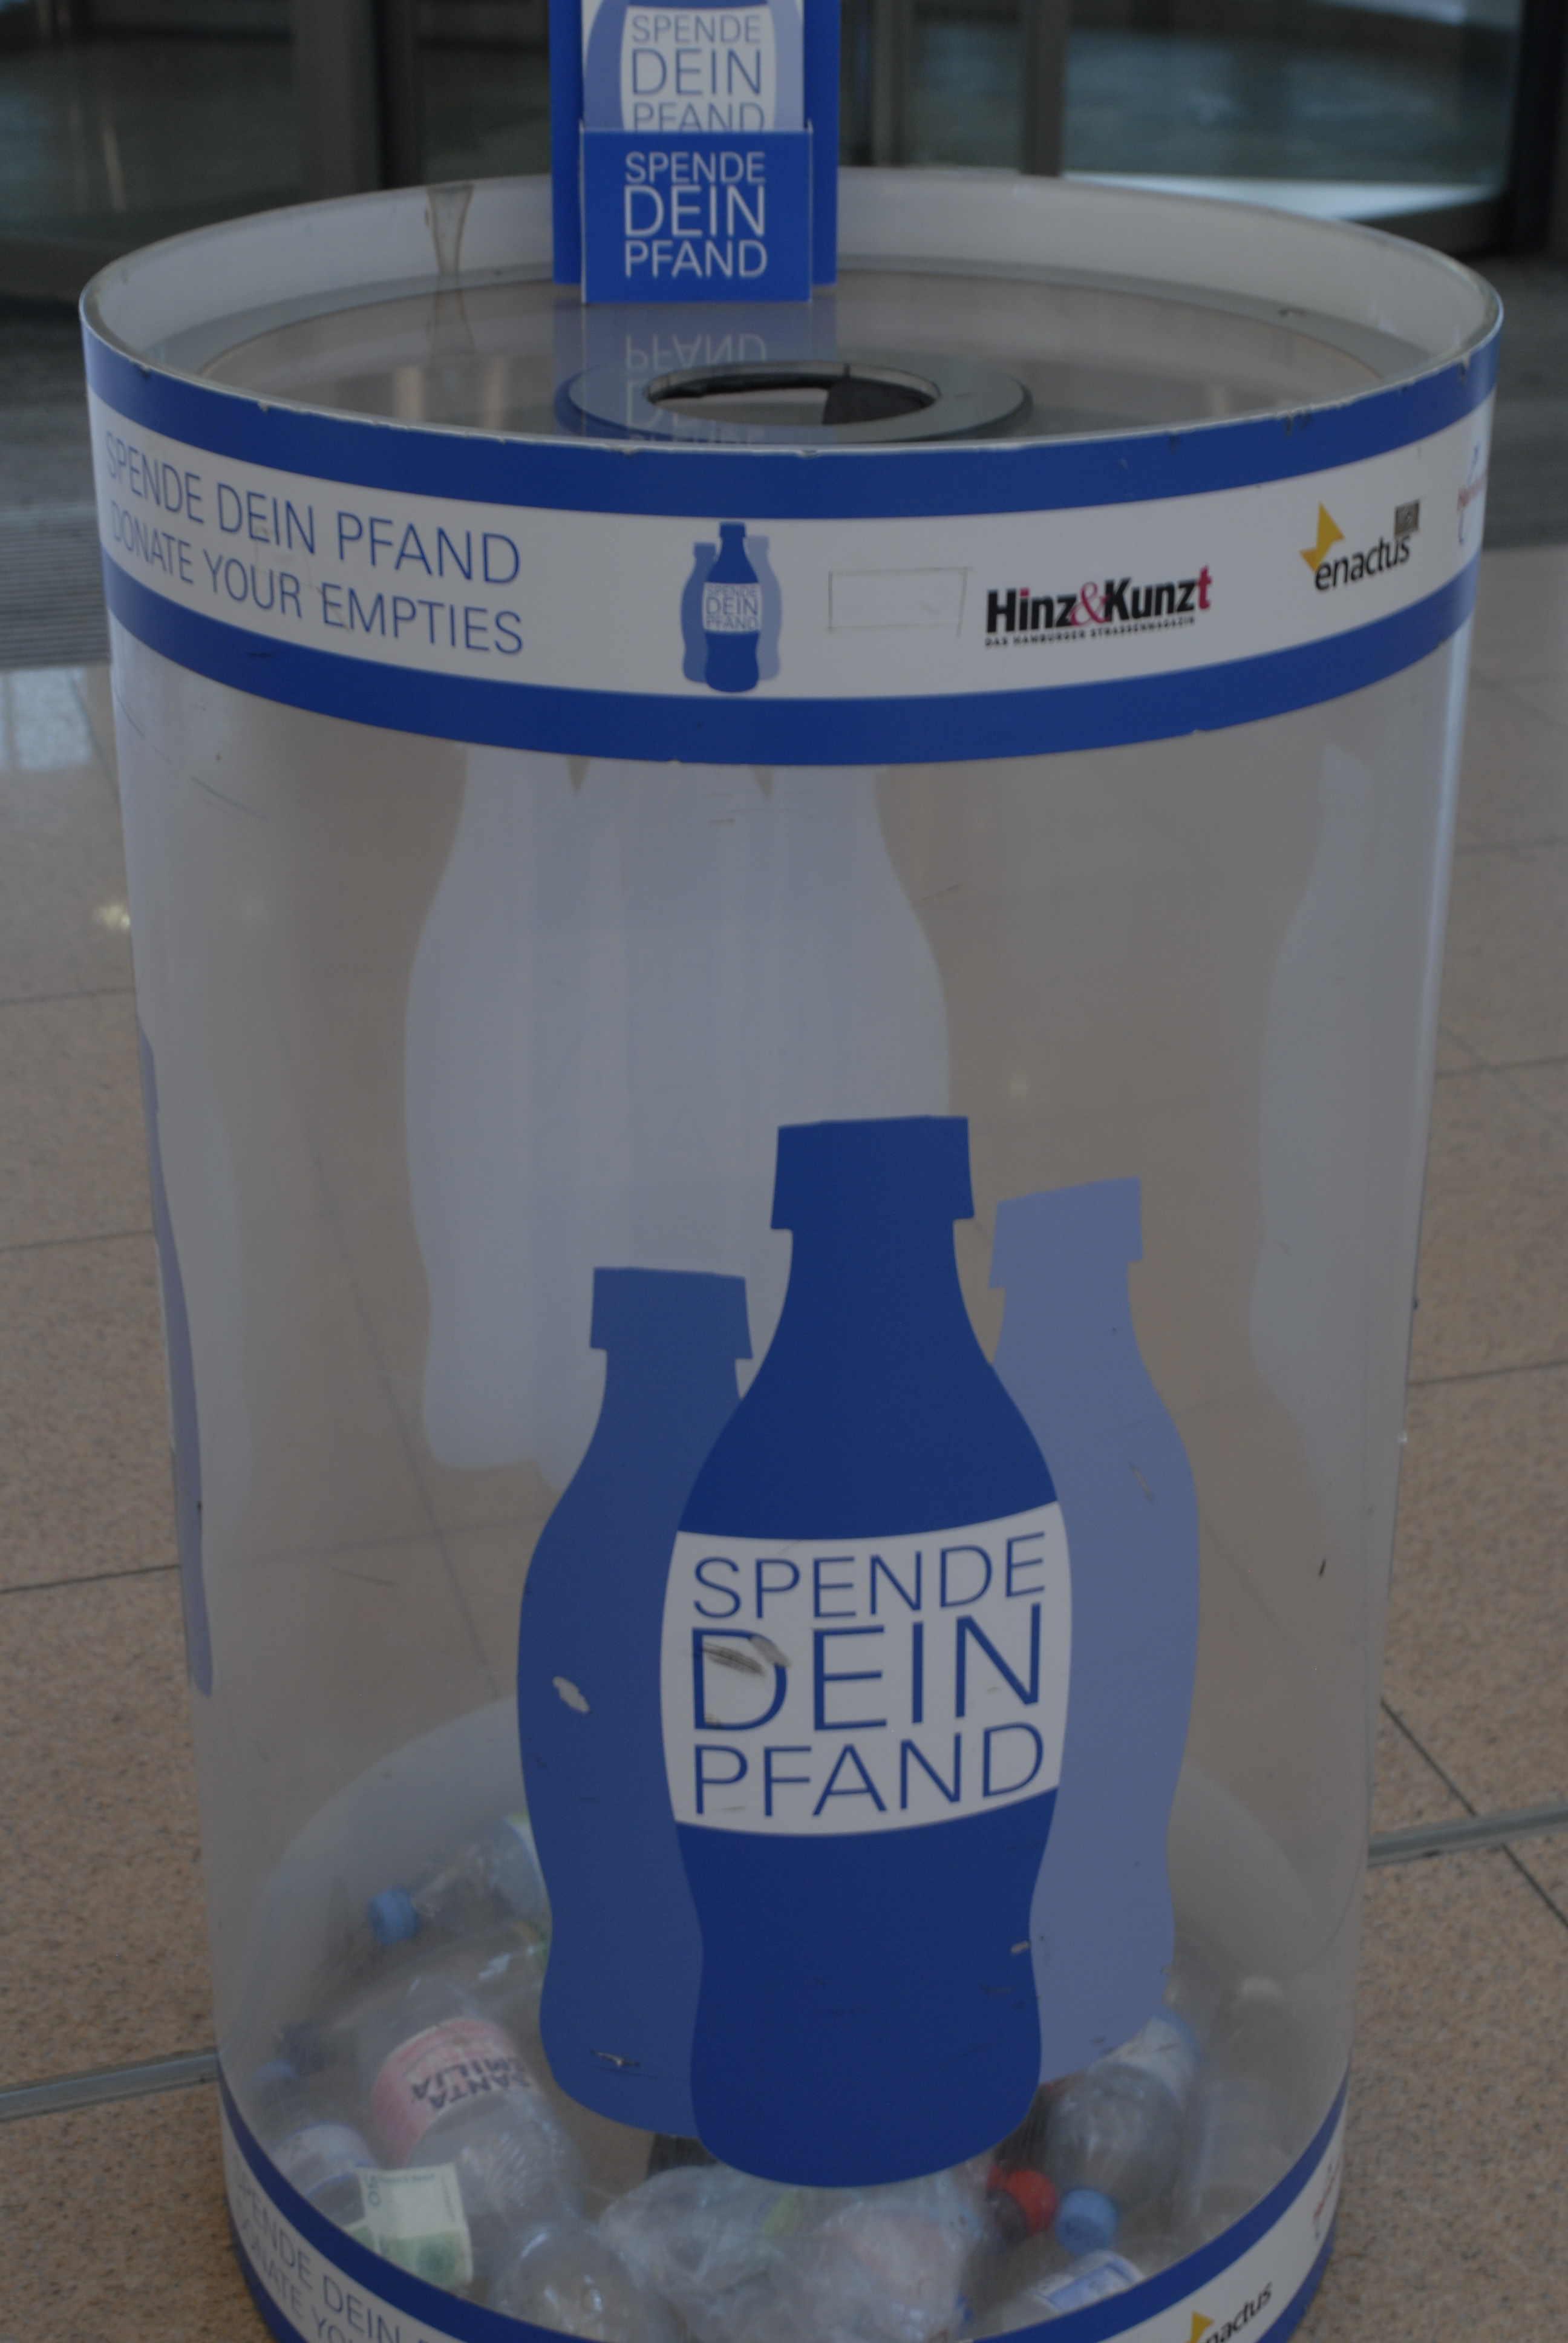 Sammelbehälter für "Spende Dein Pfand" am Flughafen Hamburg, cc by ALHH